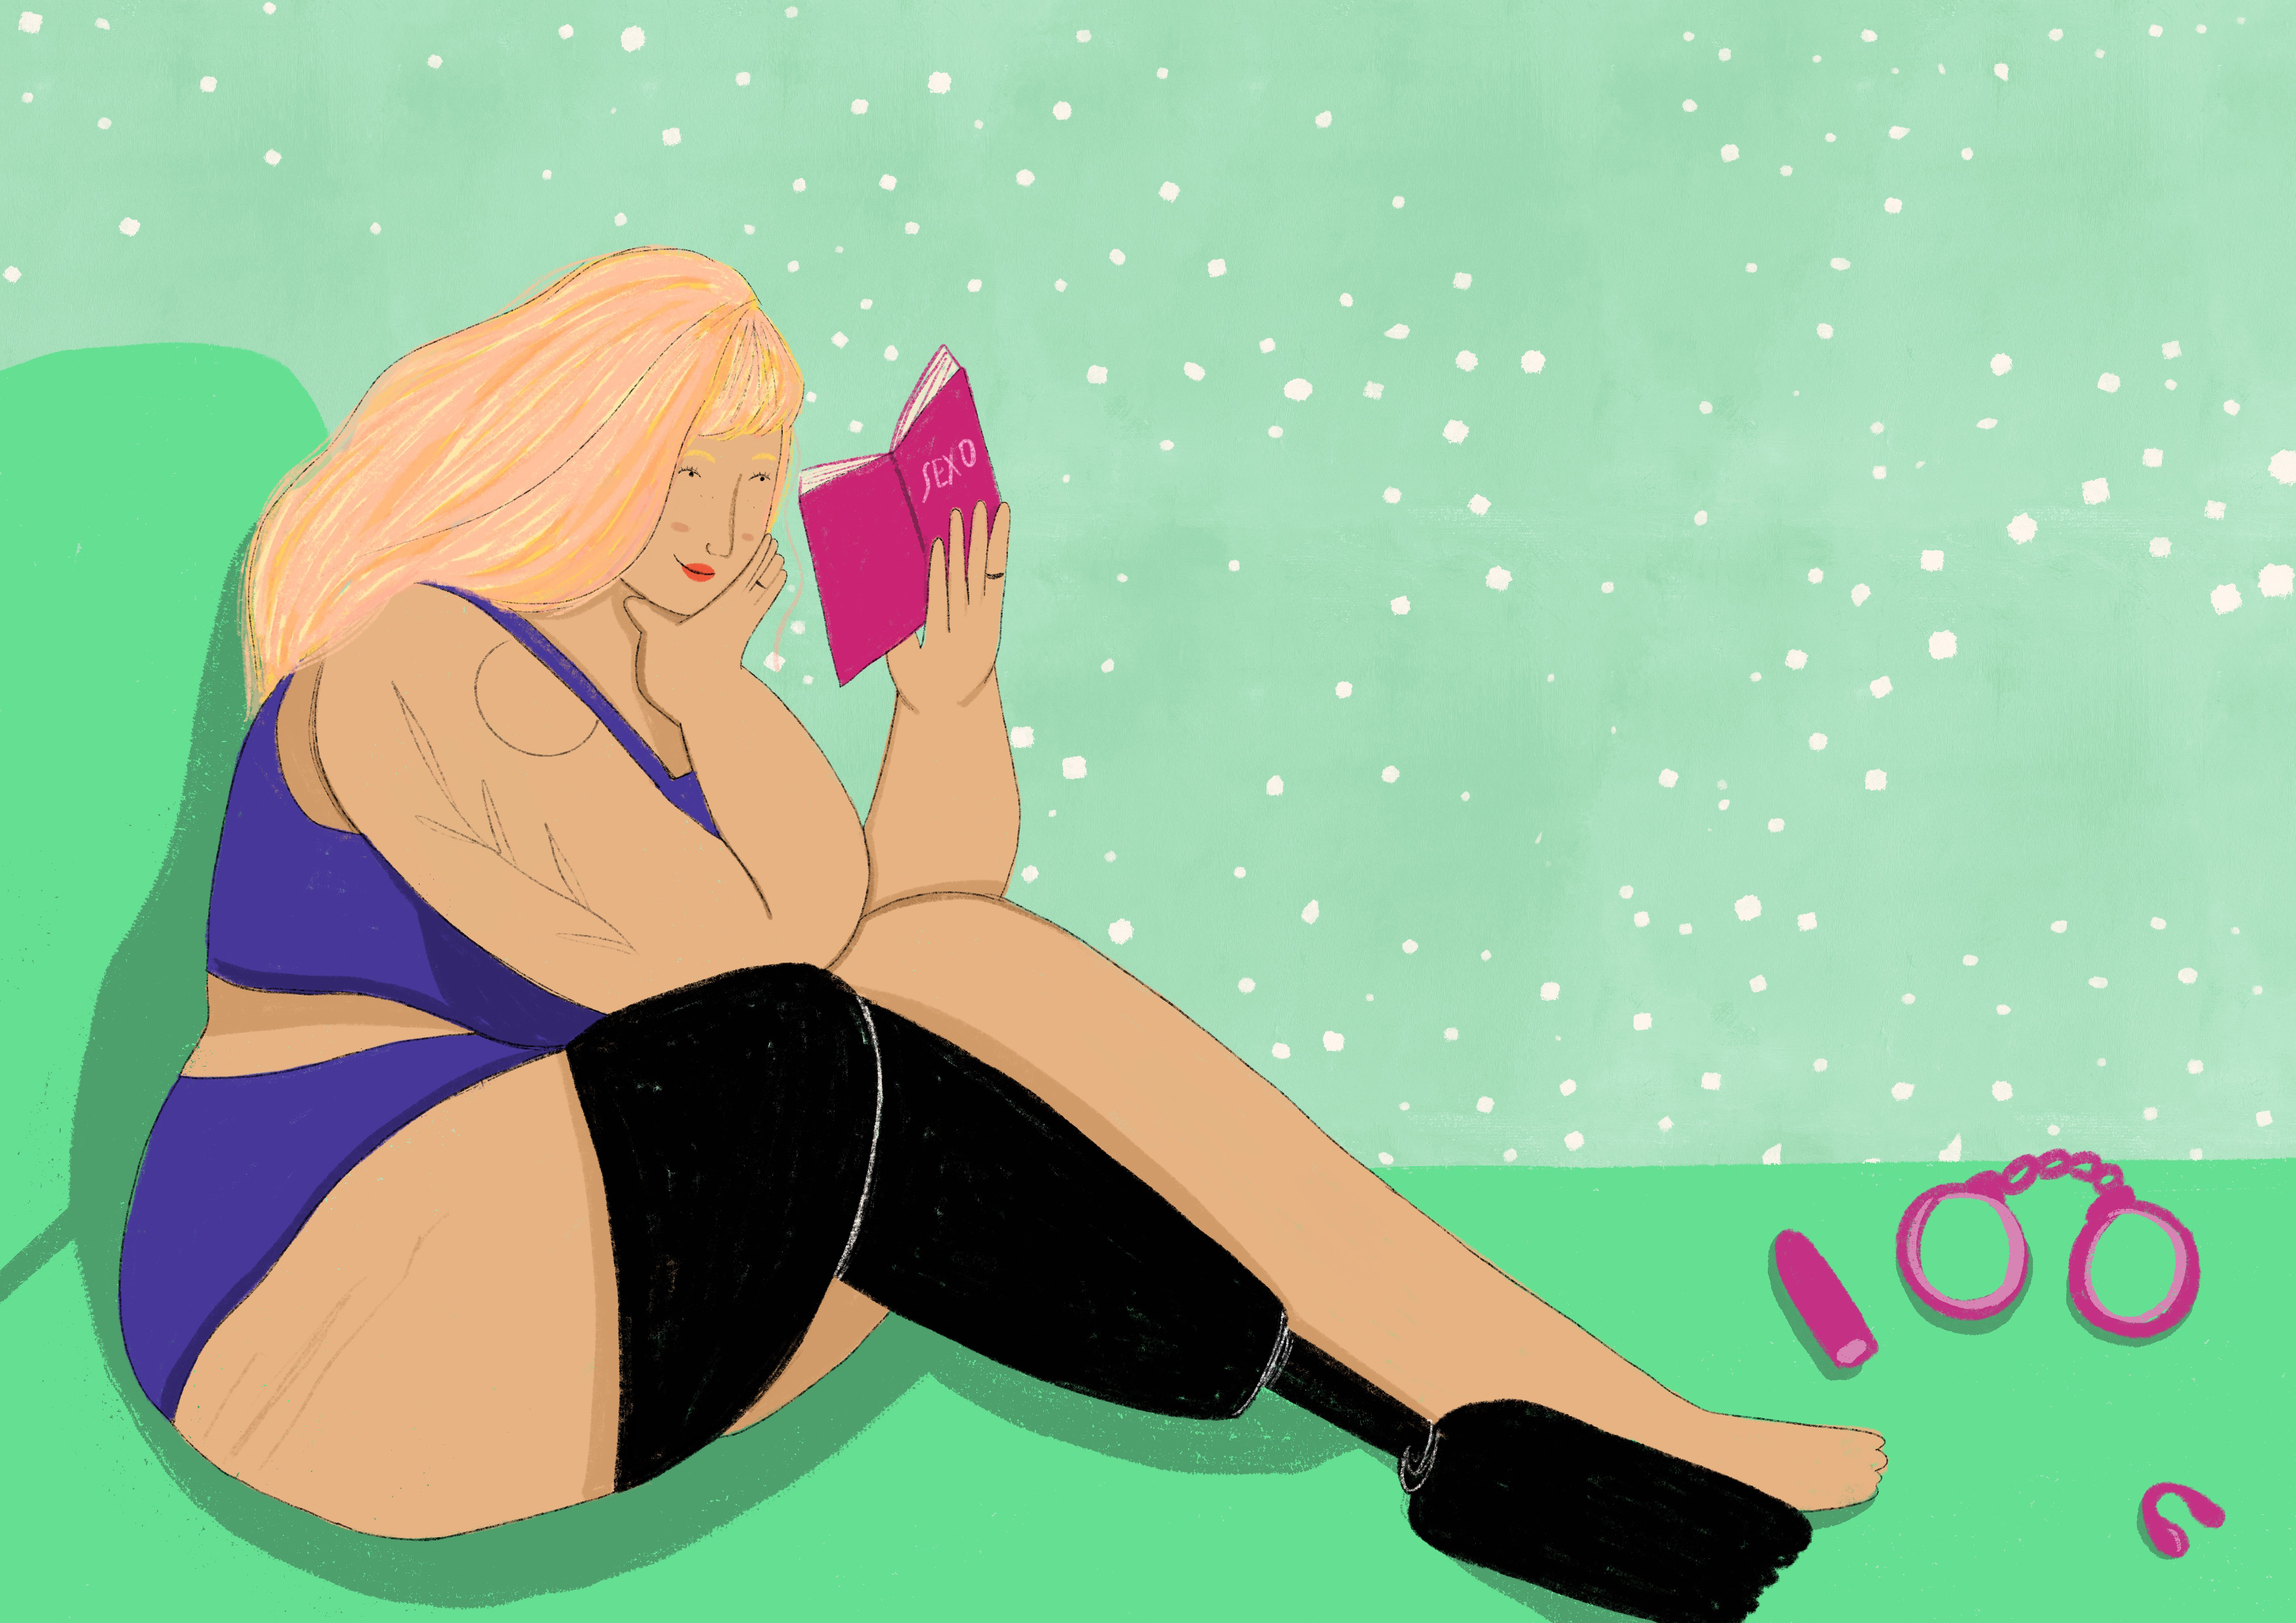 mulher de cabelo colorido, sentada na cama de calcinha e sutiã com prótese ortopédica na perna direita, lendo um livro sobr sexo com alguns sex toys do lado